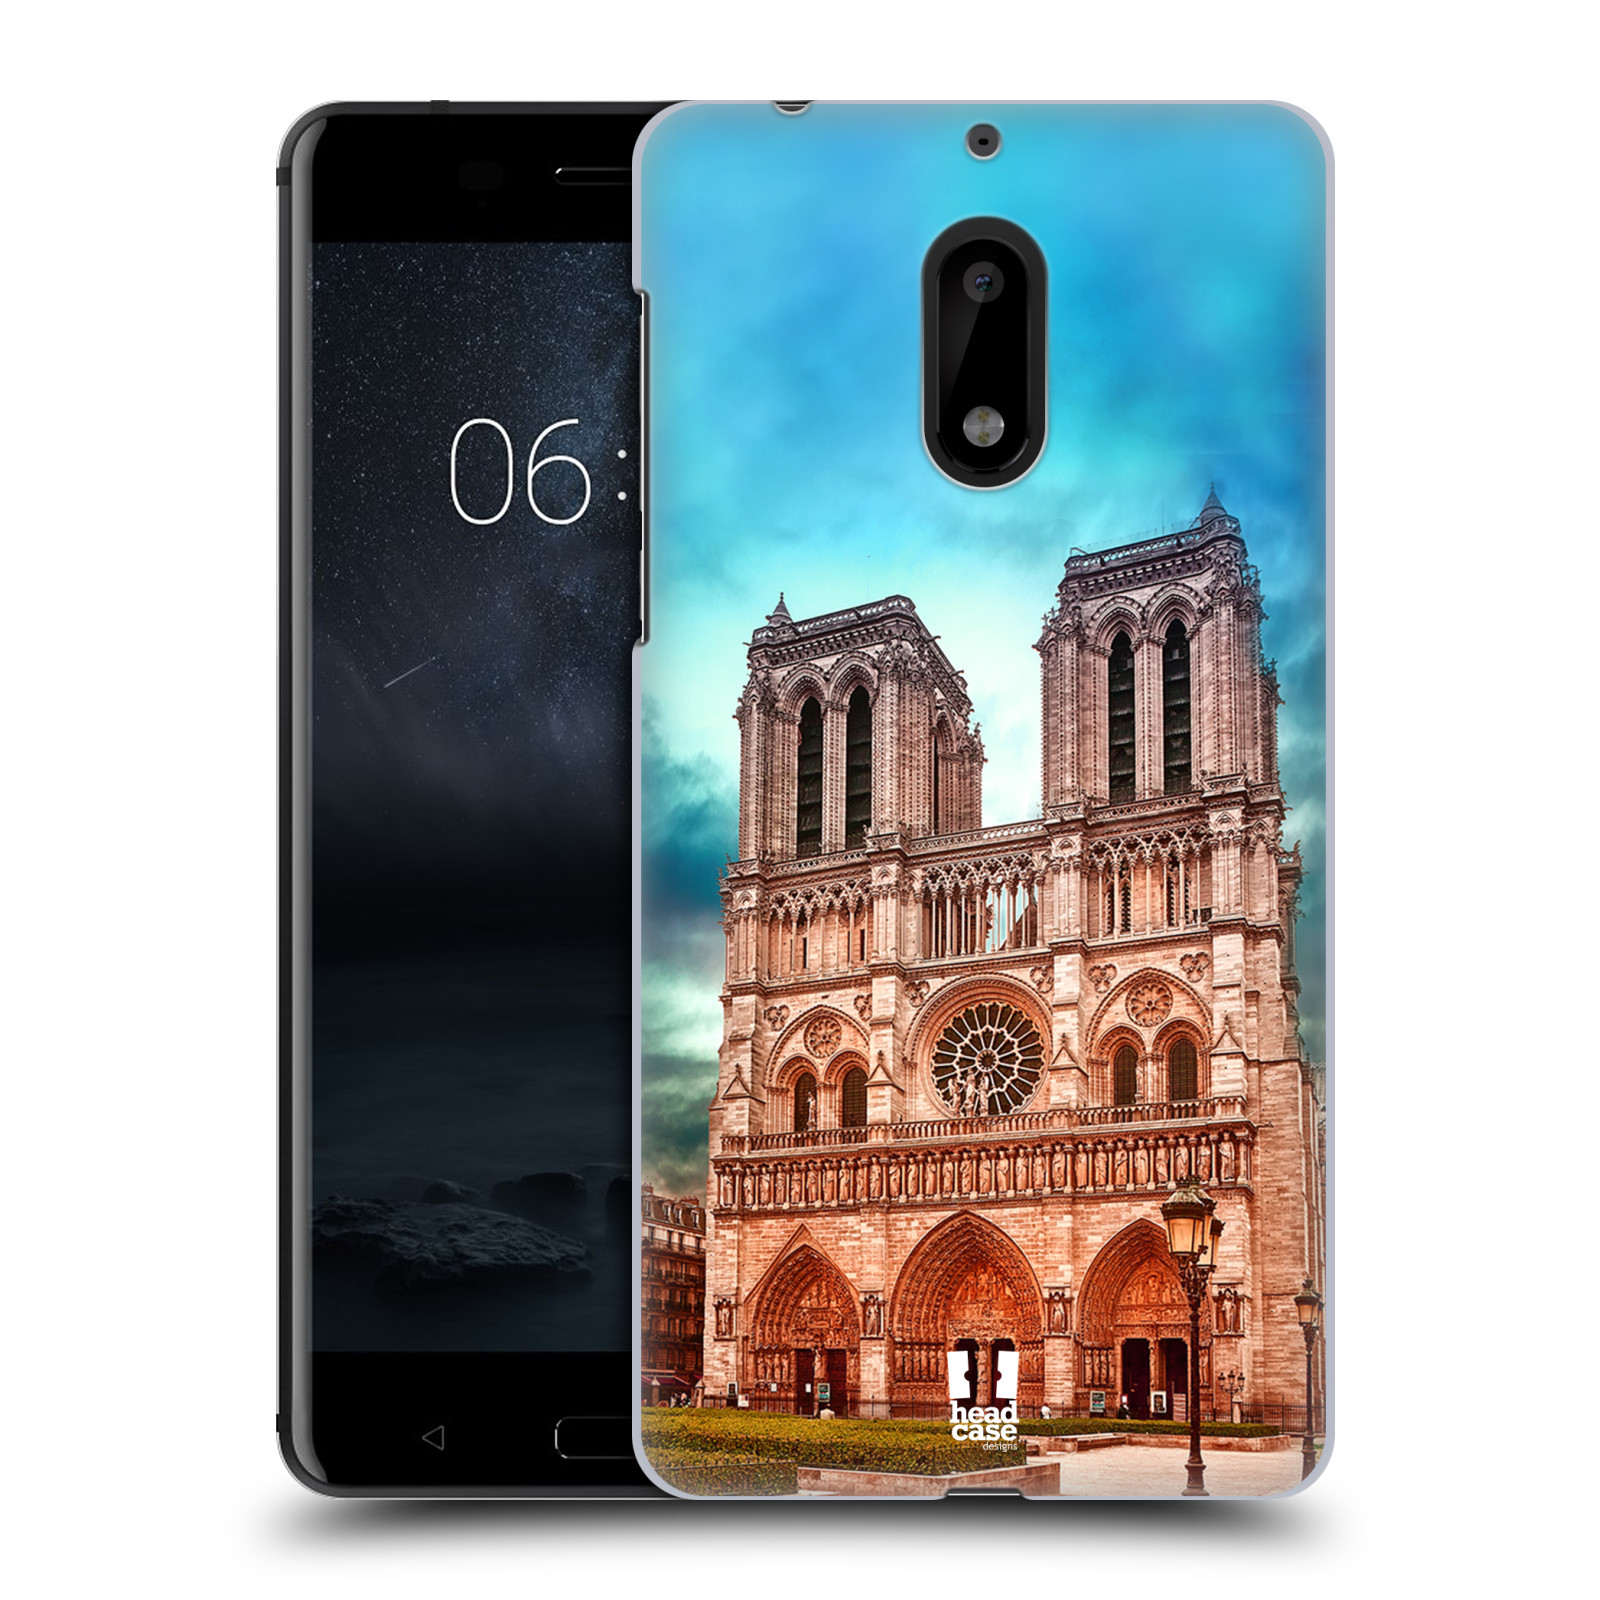 Pouzdro na mobil Nokia 6 - HEAD CASE - historická místa katedrála Notre Dame